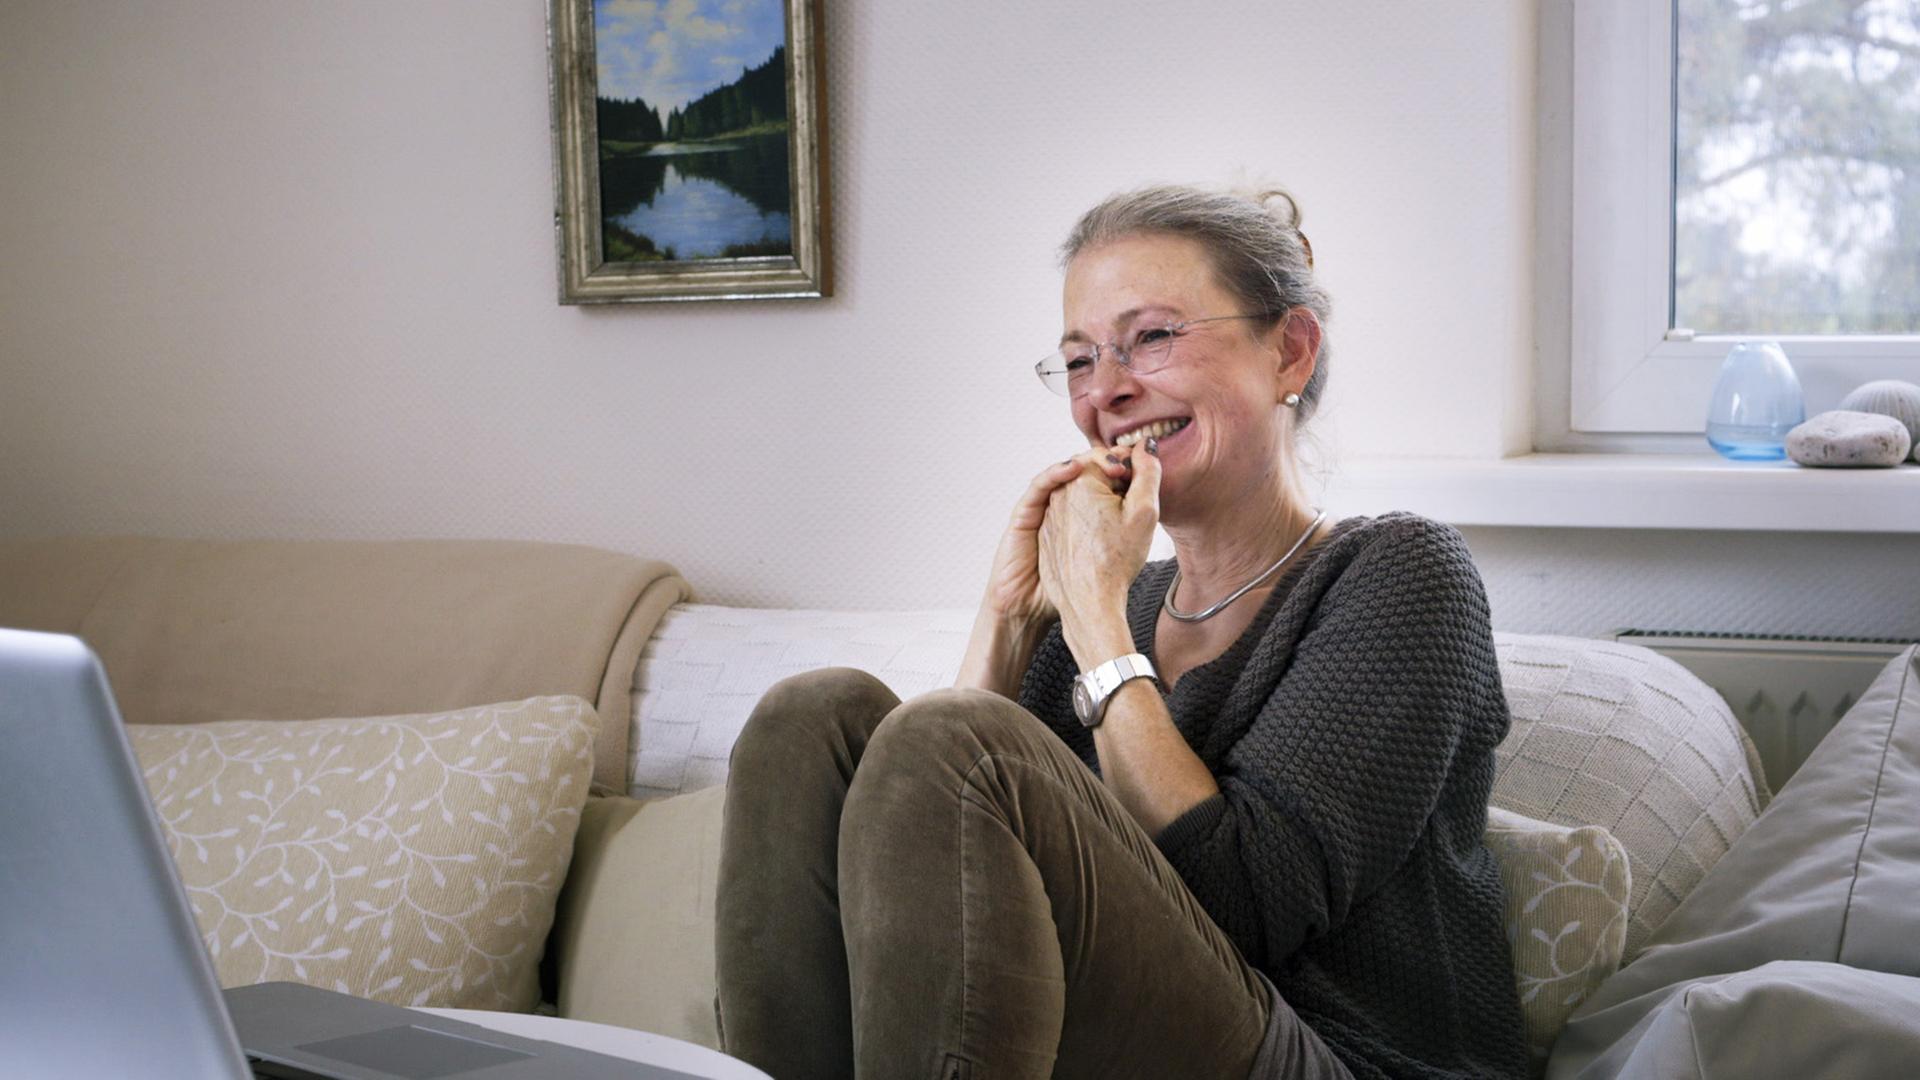 Filmstill aus der Doku: "ER SIE ICH" von Carlotta Kittel. Die Mutter sitzt auf einem Sofa und lacht.